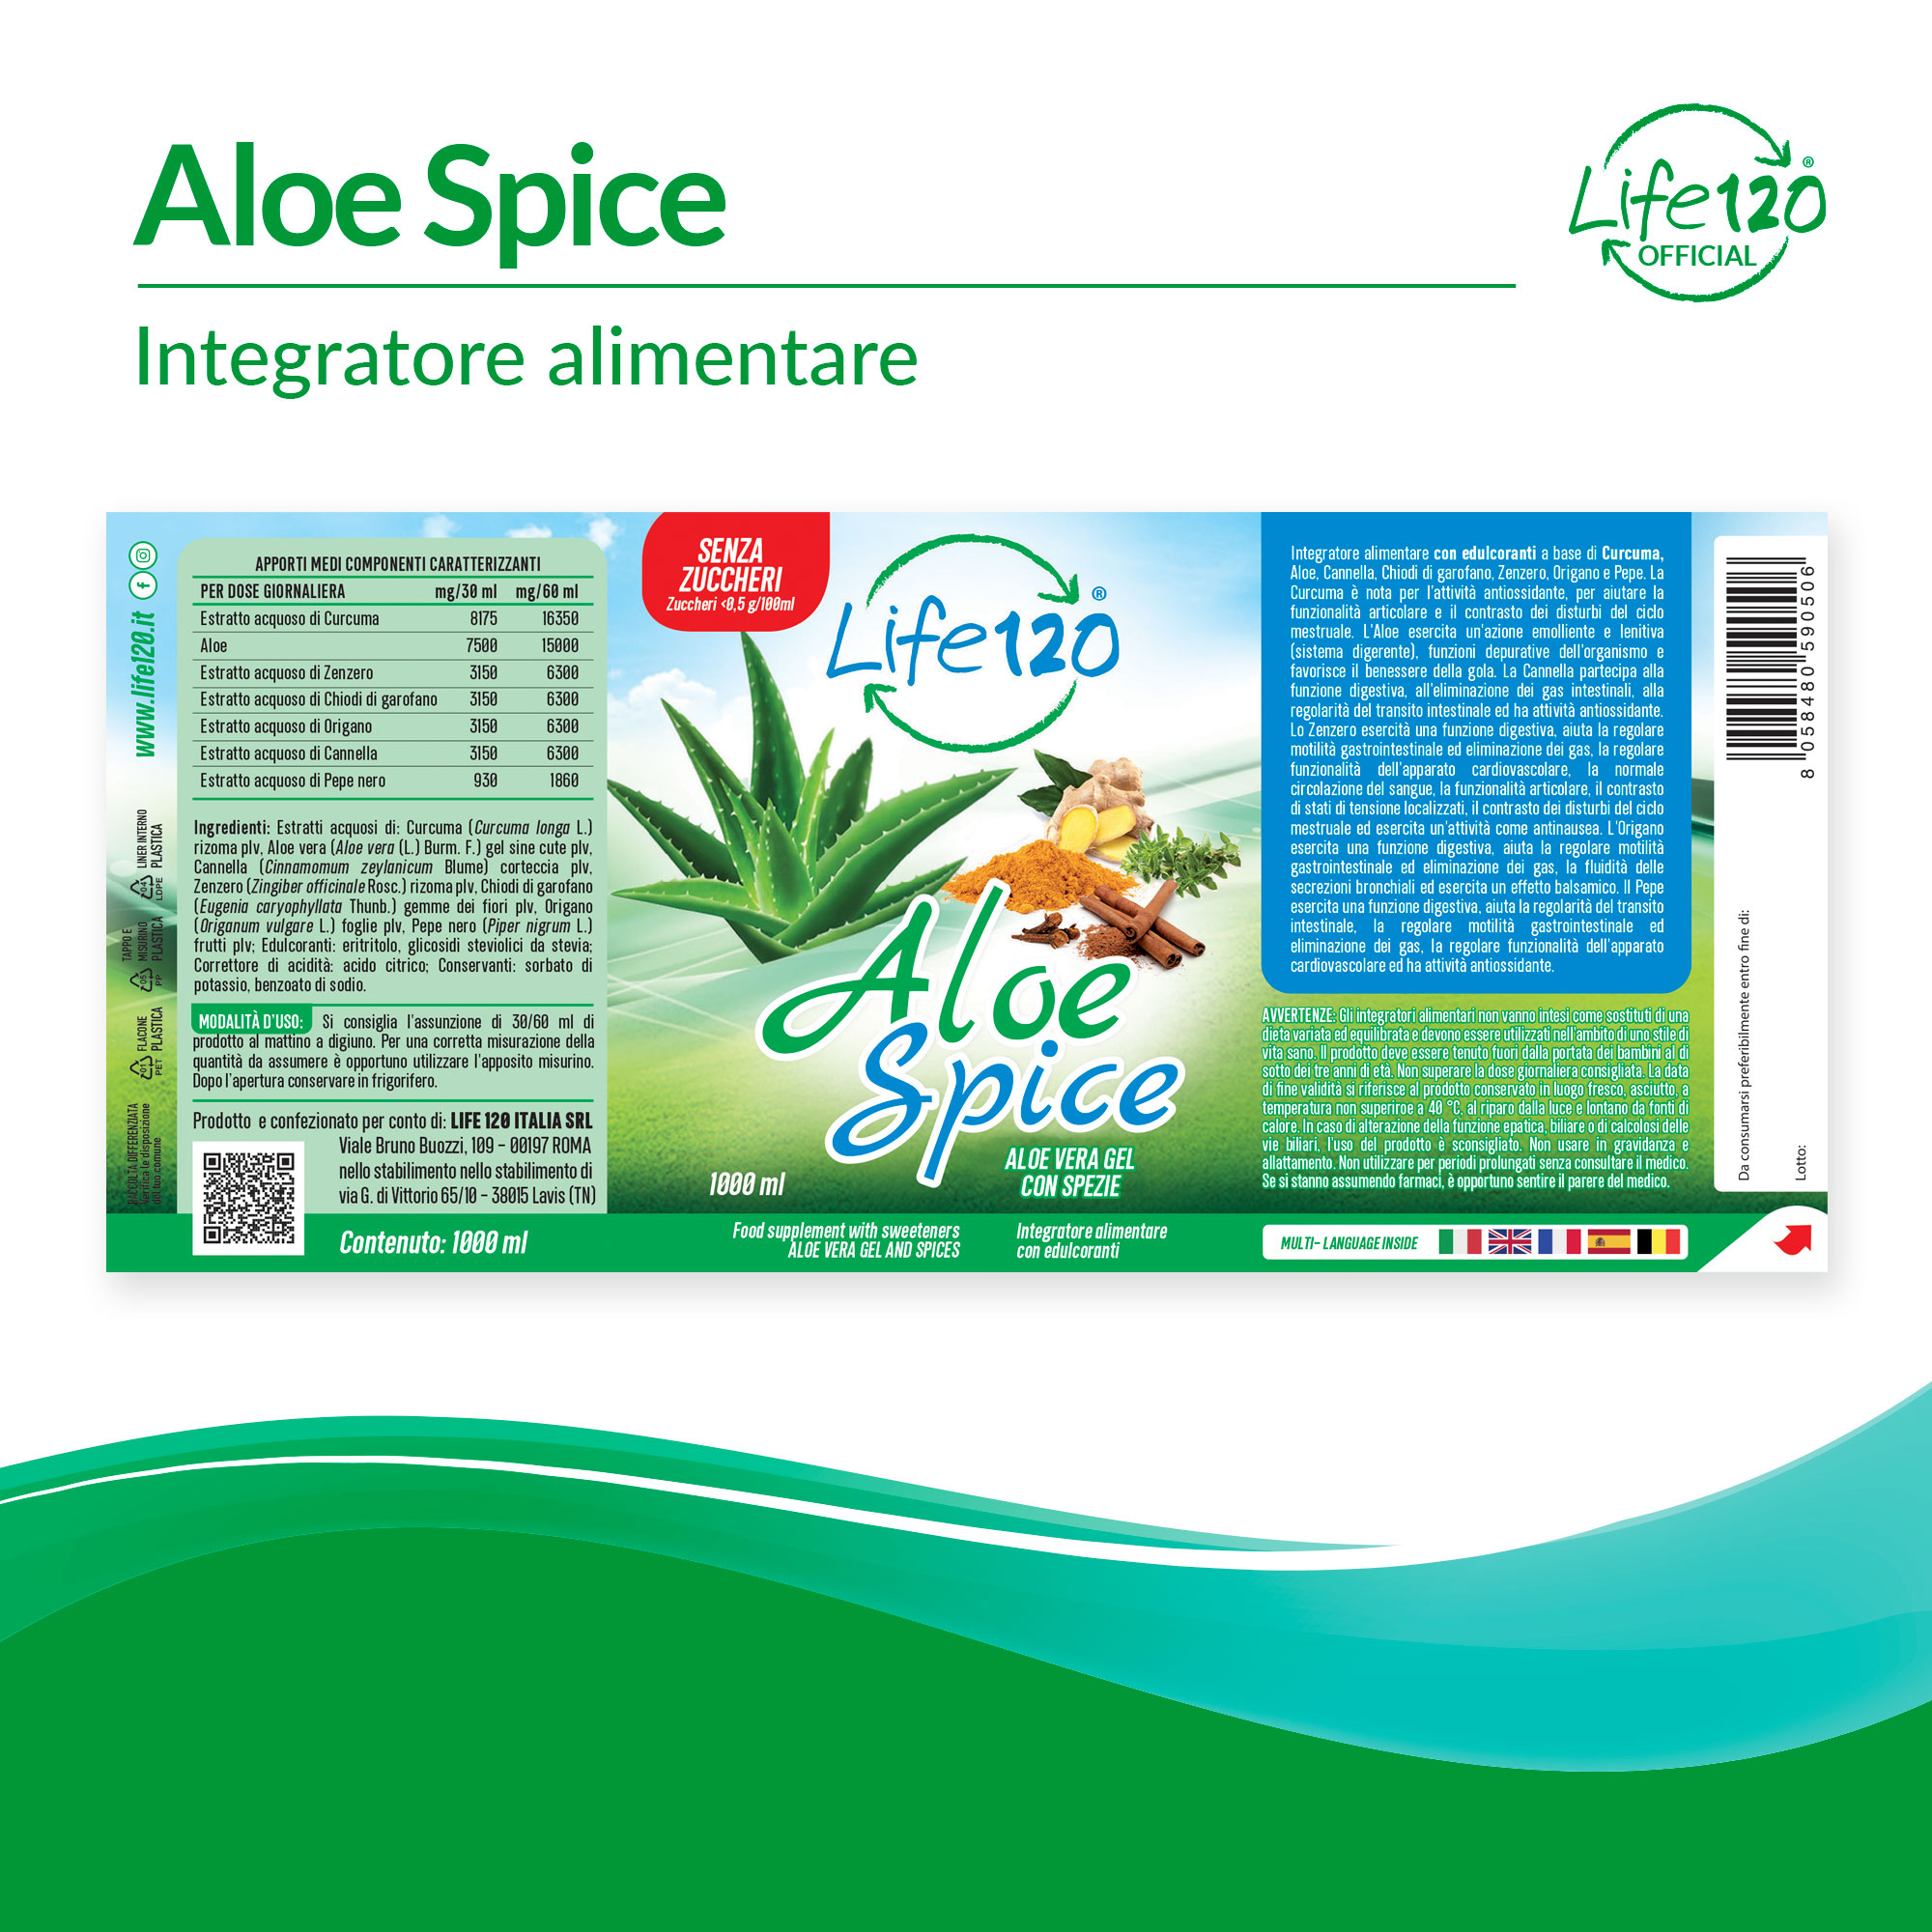 Aloe Spice